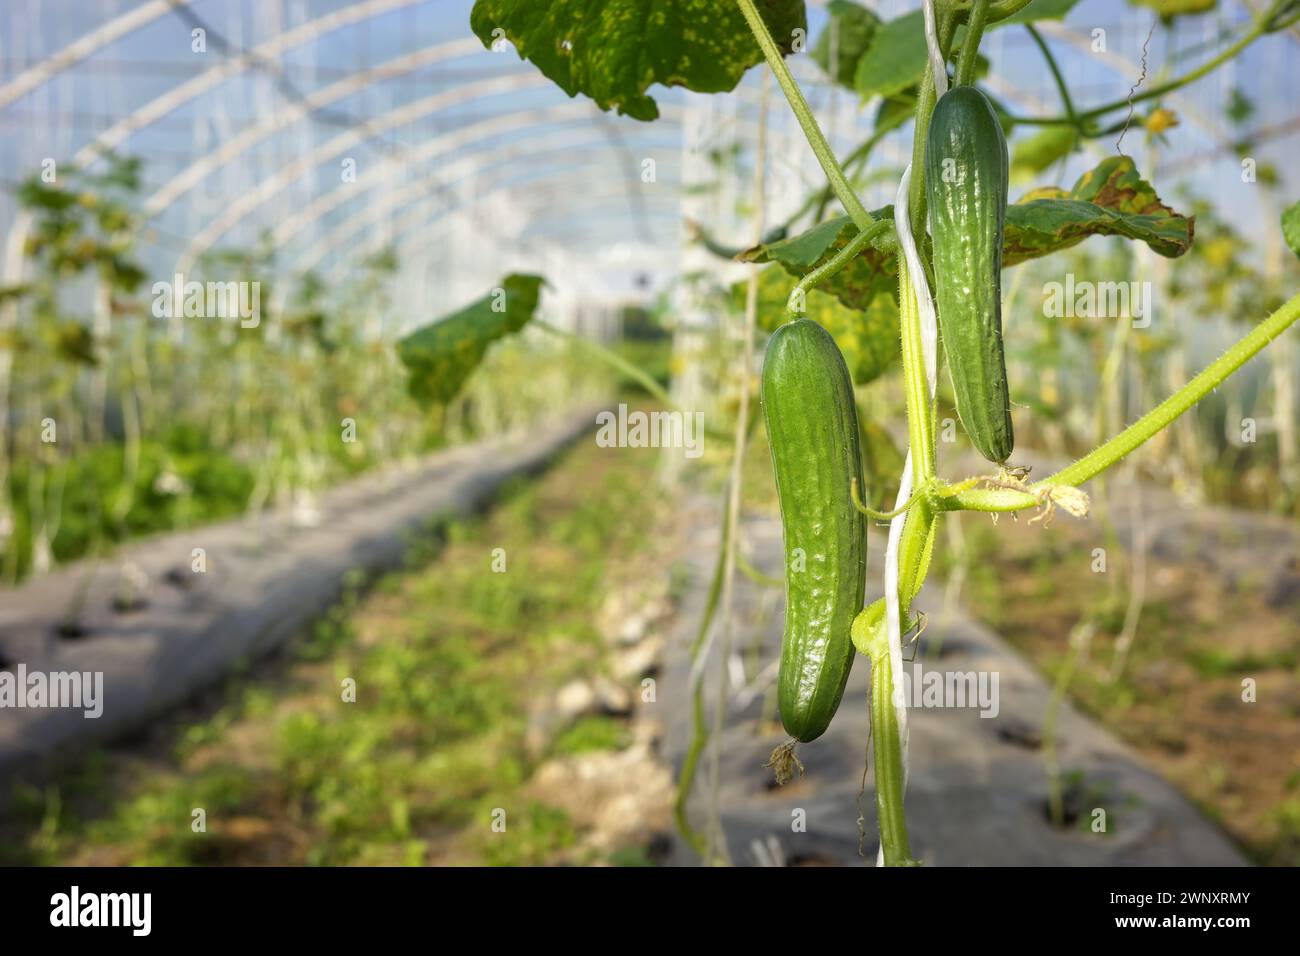 Piantagione di cetrioli organici a effetto serra, concentrazione selettiva. Foto Stock